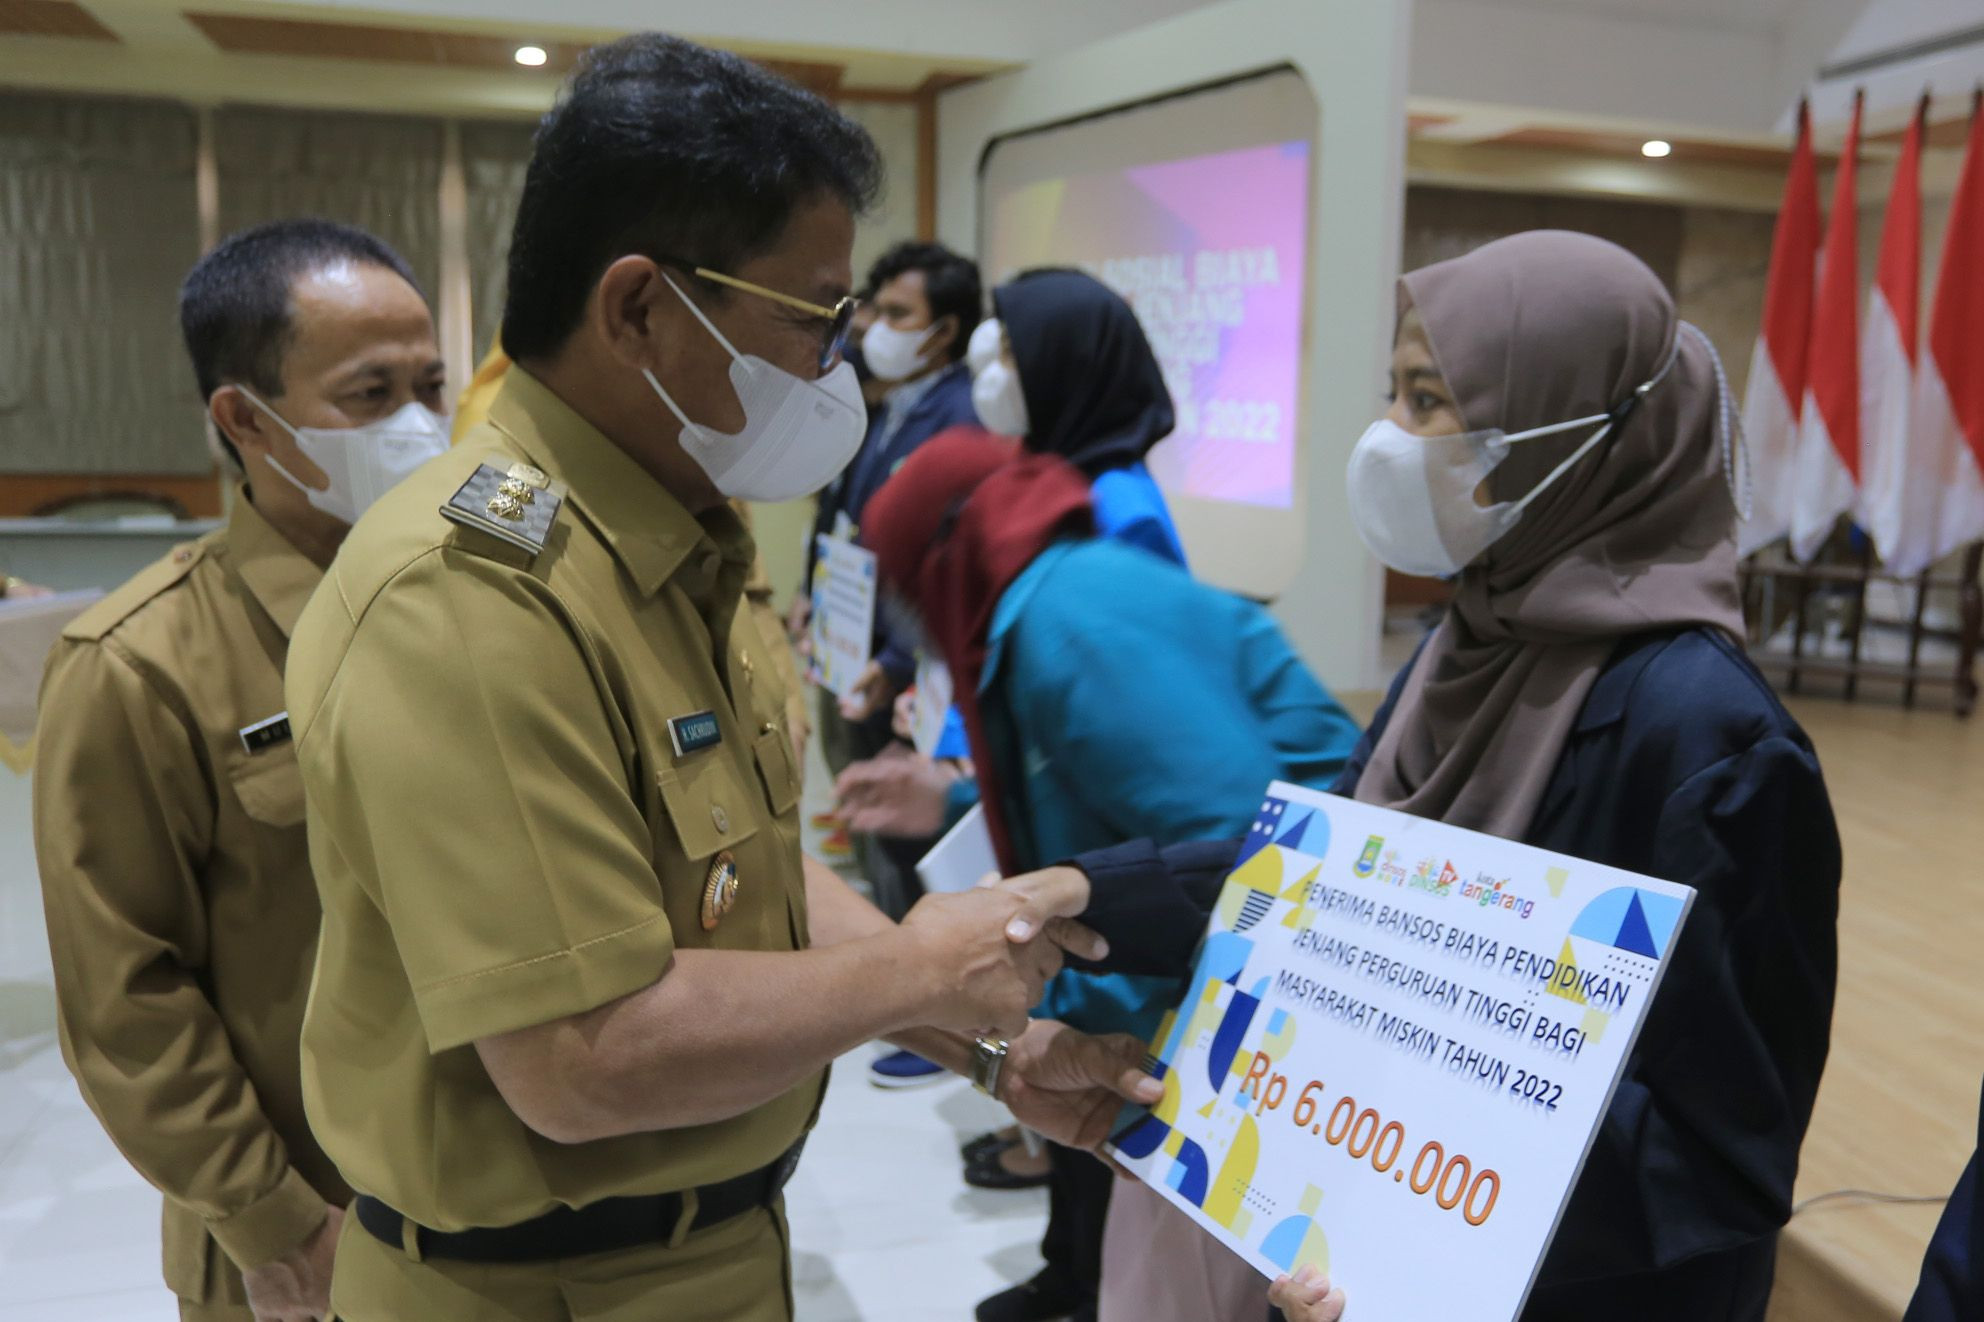 Dinas Sosial Kota Tangerang Membuka Pendaftaran Bansos Mahasiswa Senilai Rp.6.000.000 Per Penerima